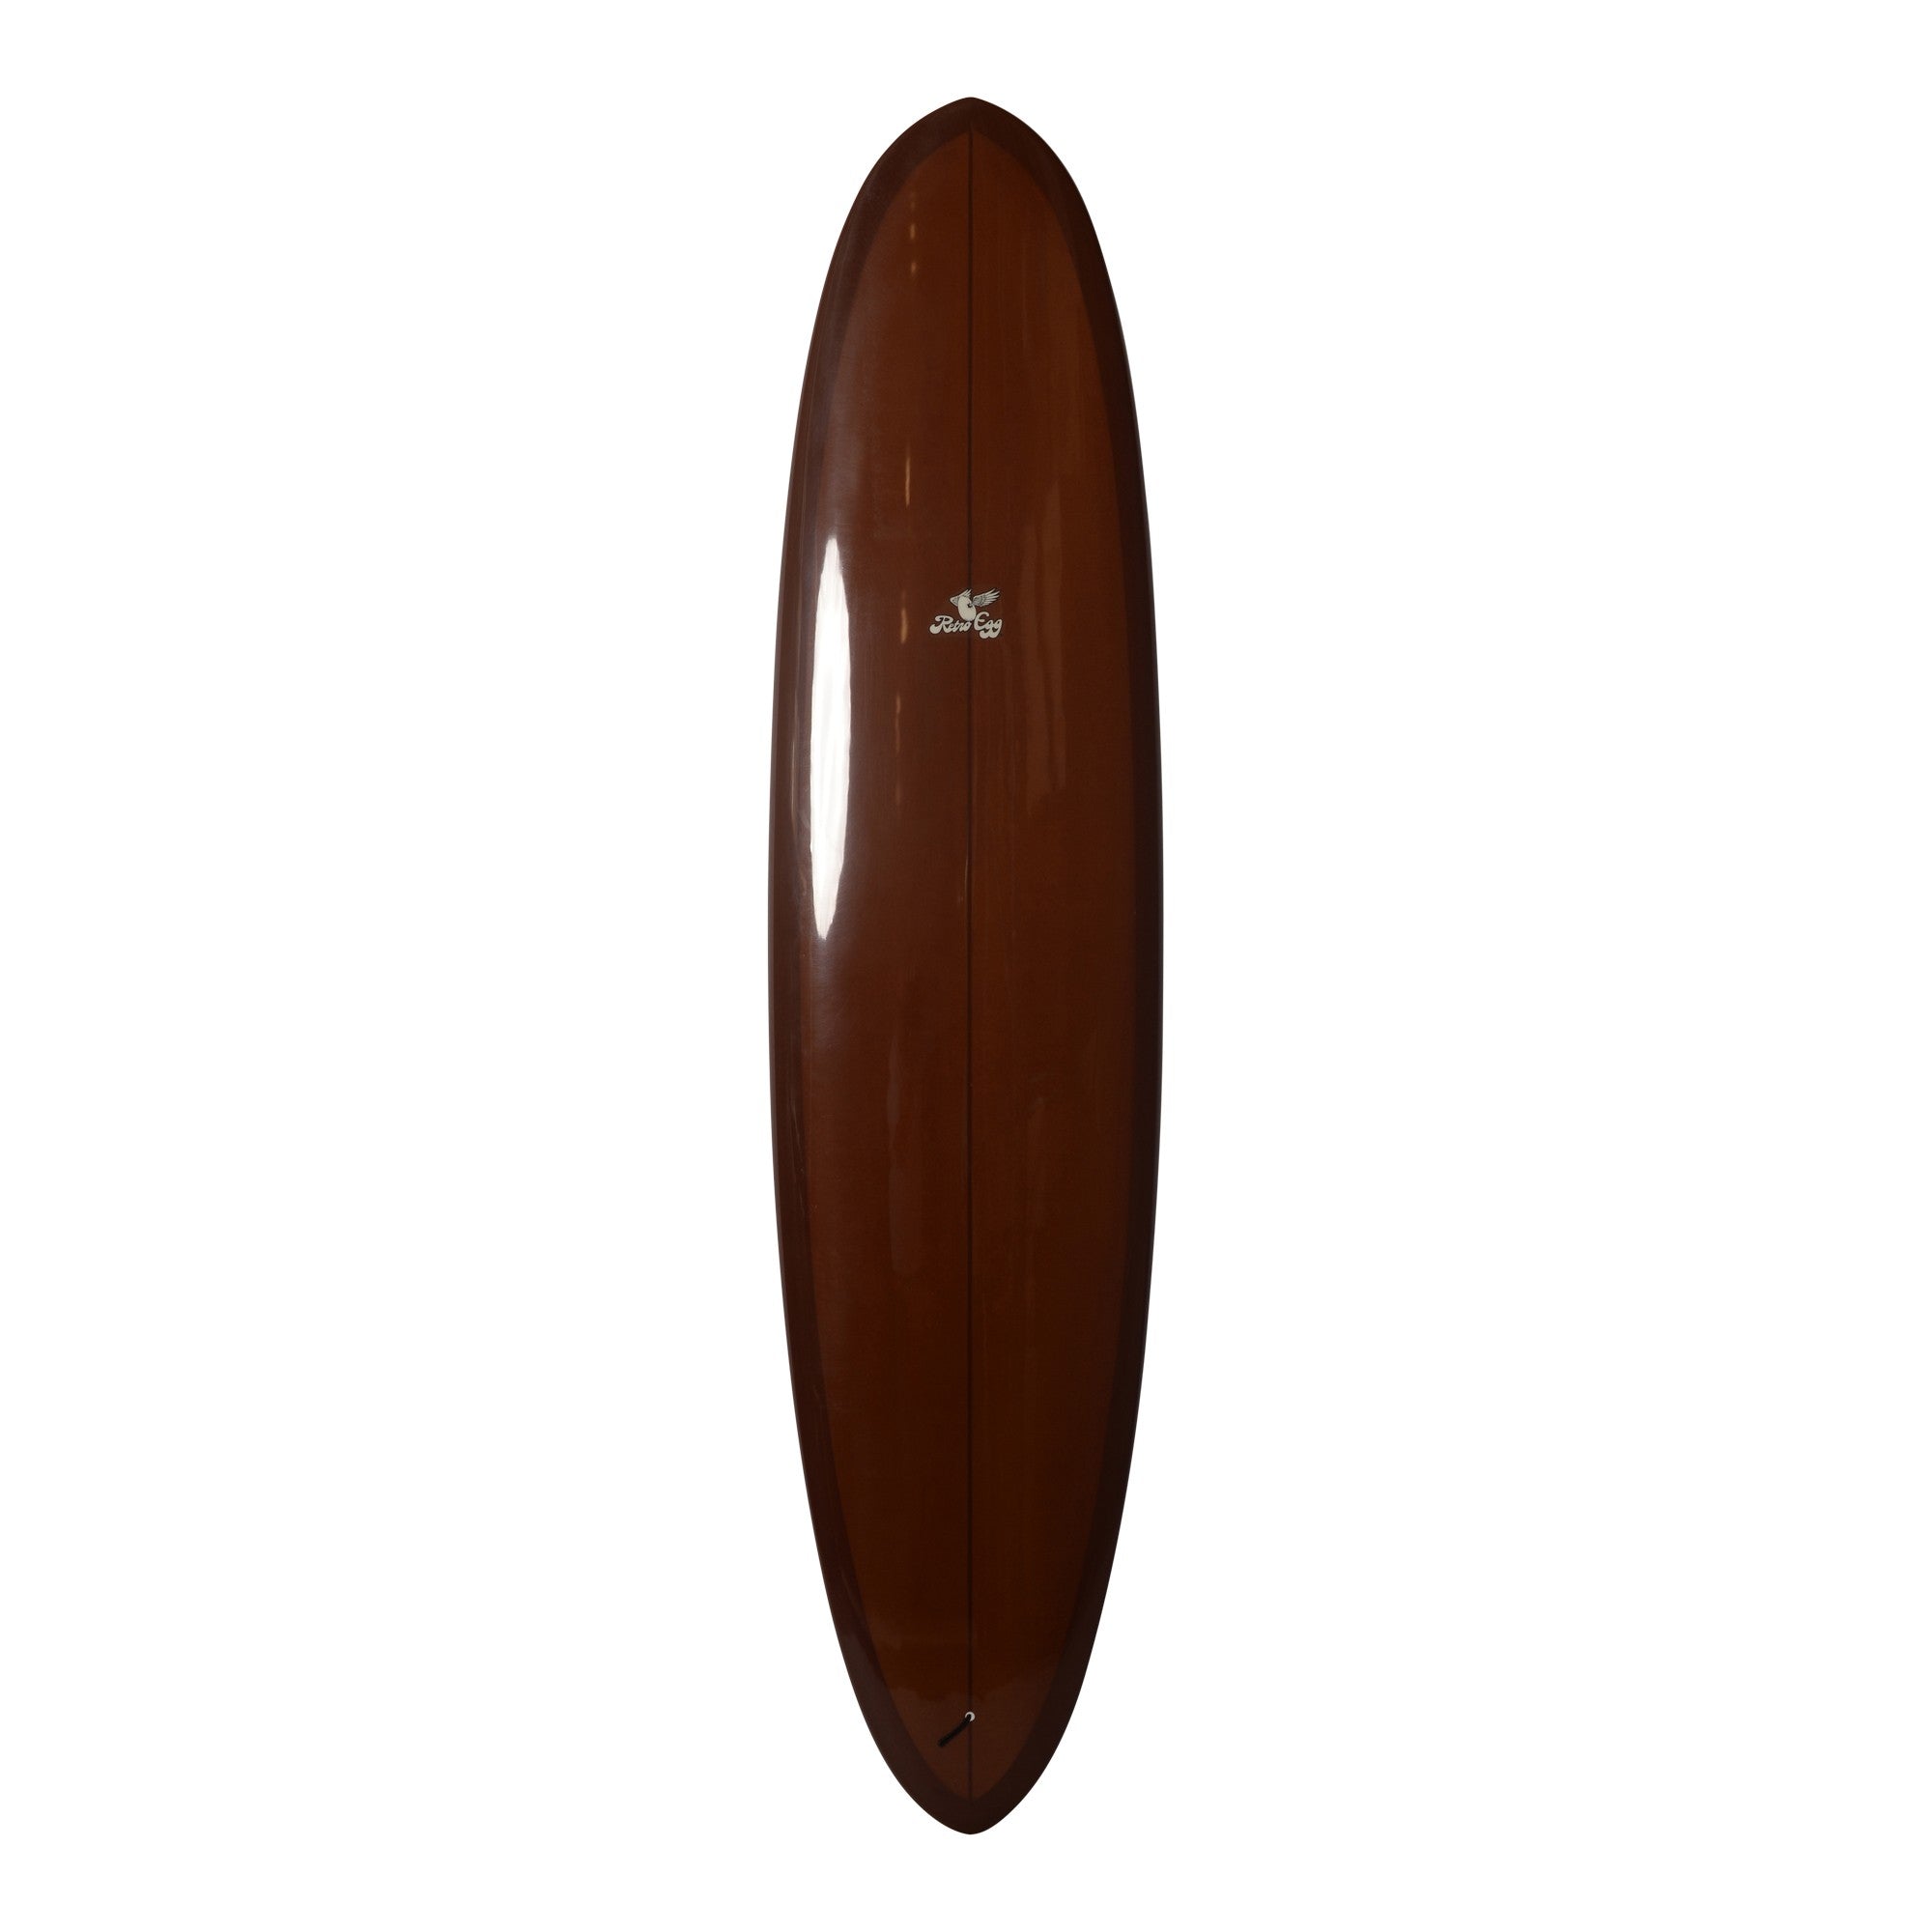 HOBIE Surfboards - Retro Egg - 8'0 (PU) - Chocolate